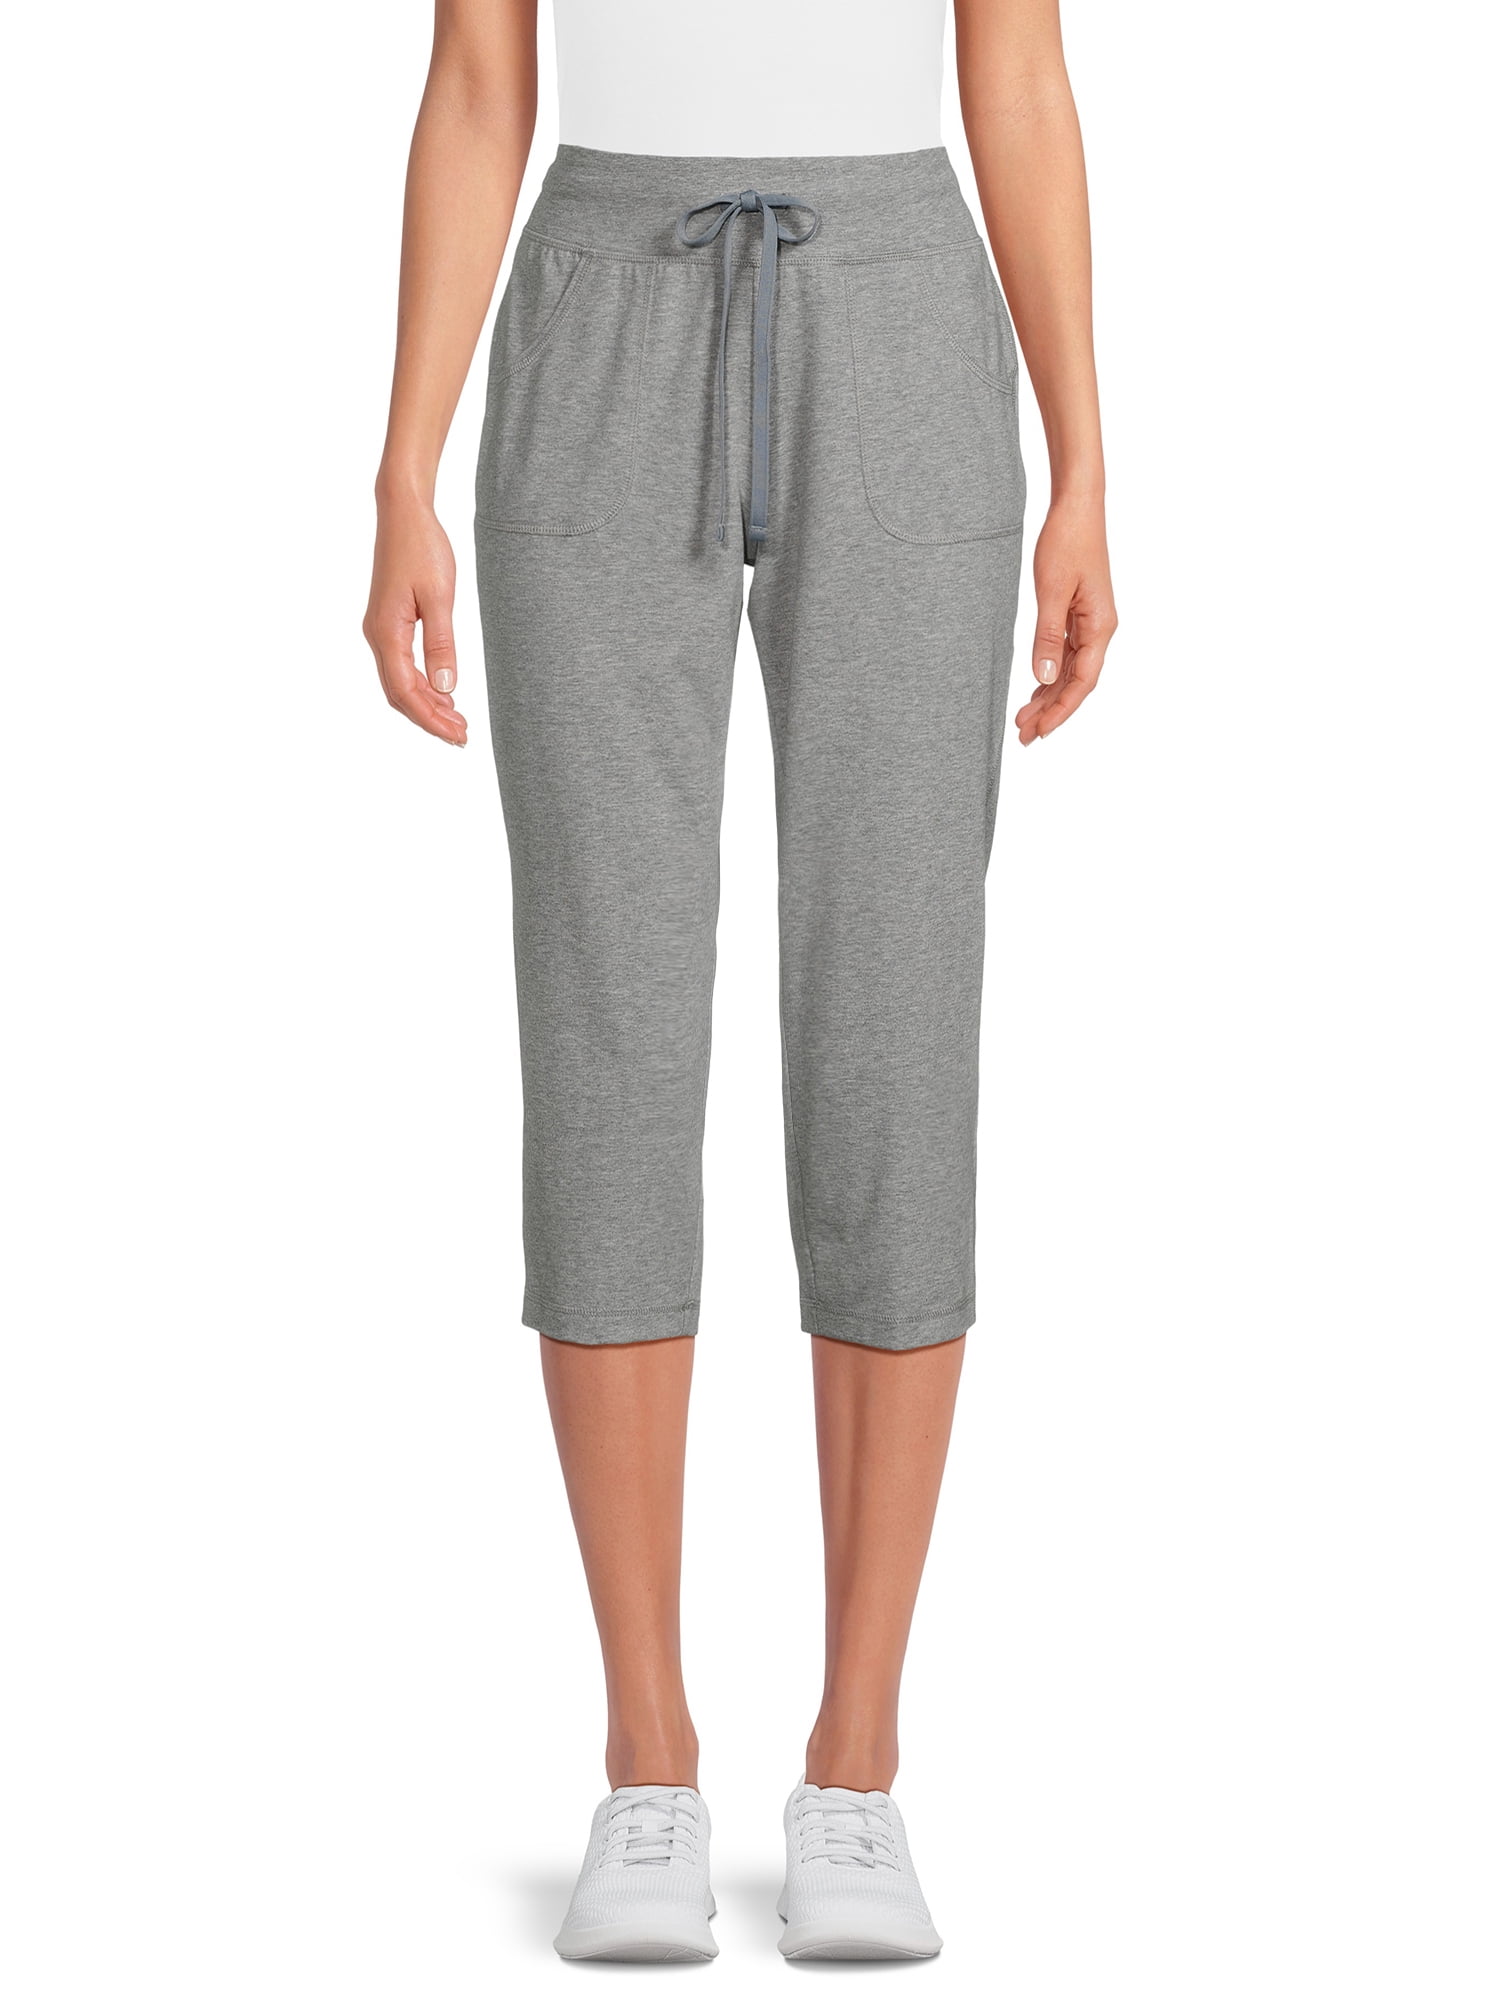 Athletic Works Women's Knit Capri Pants with Pockets, Sizes XS-XXXL ...